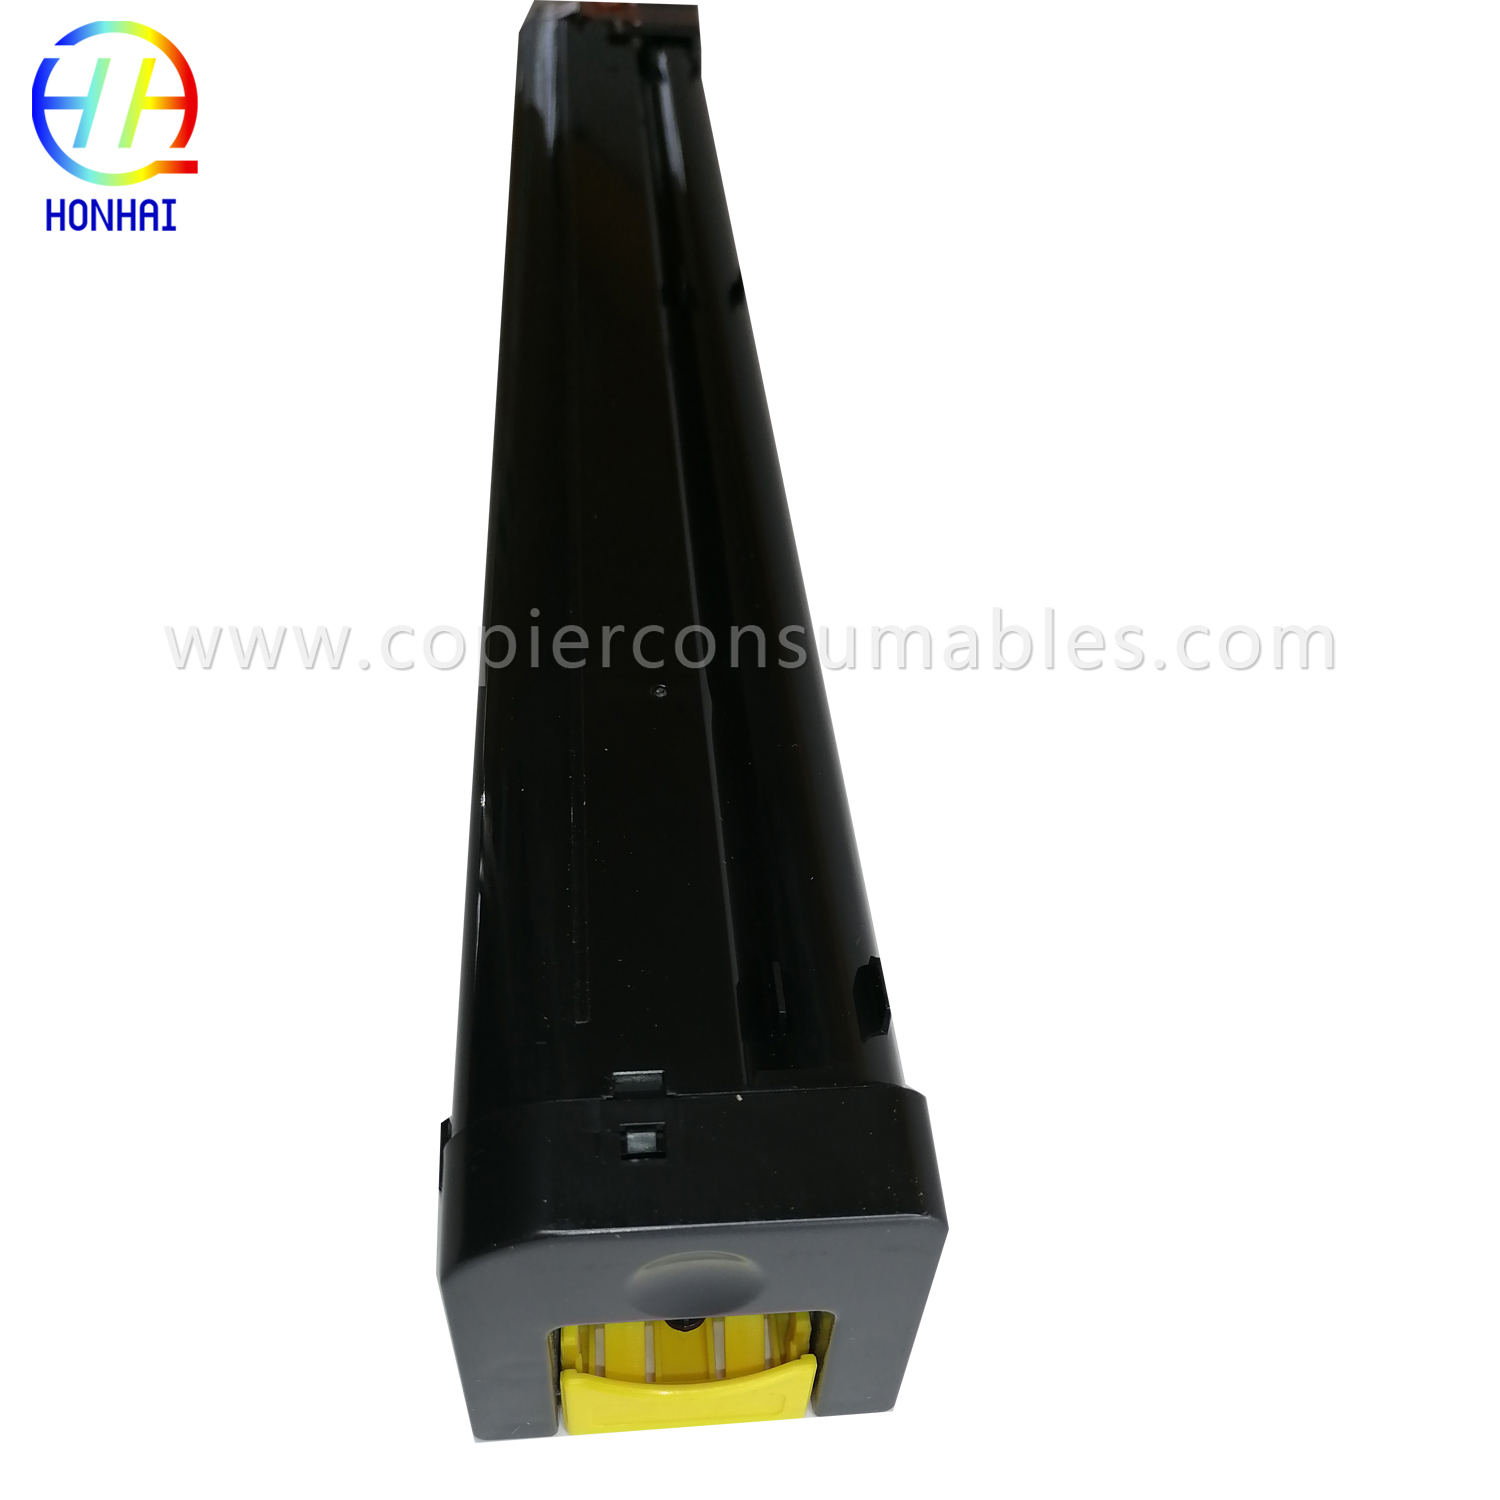 Toner Cartridge for Sharp MX-51FTYA